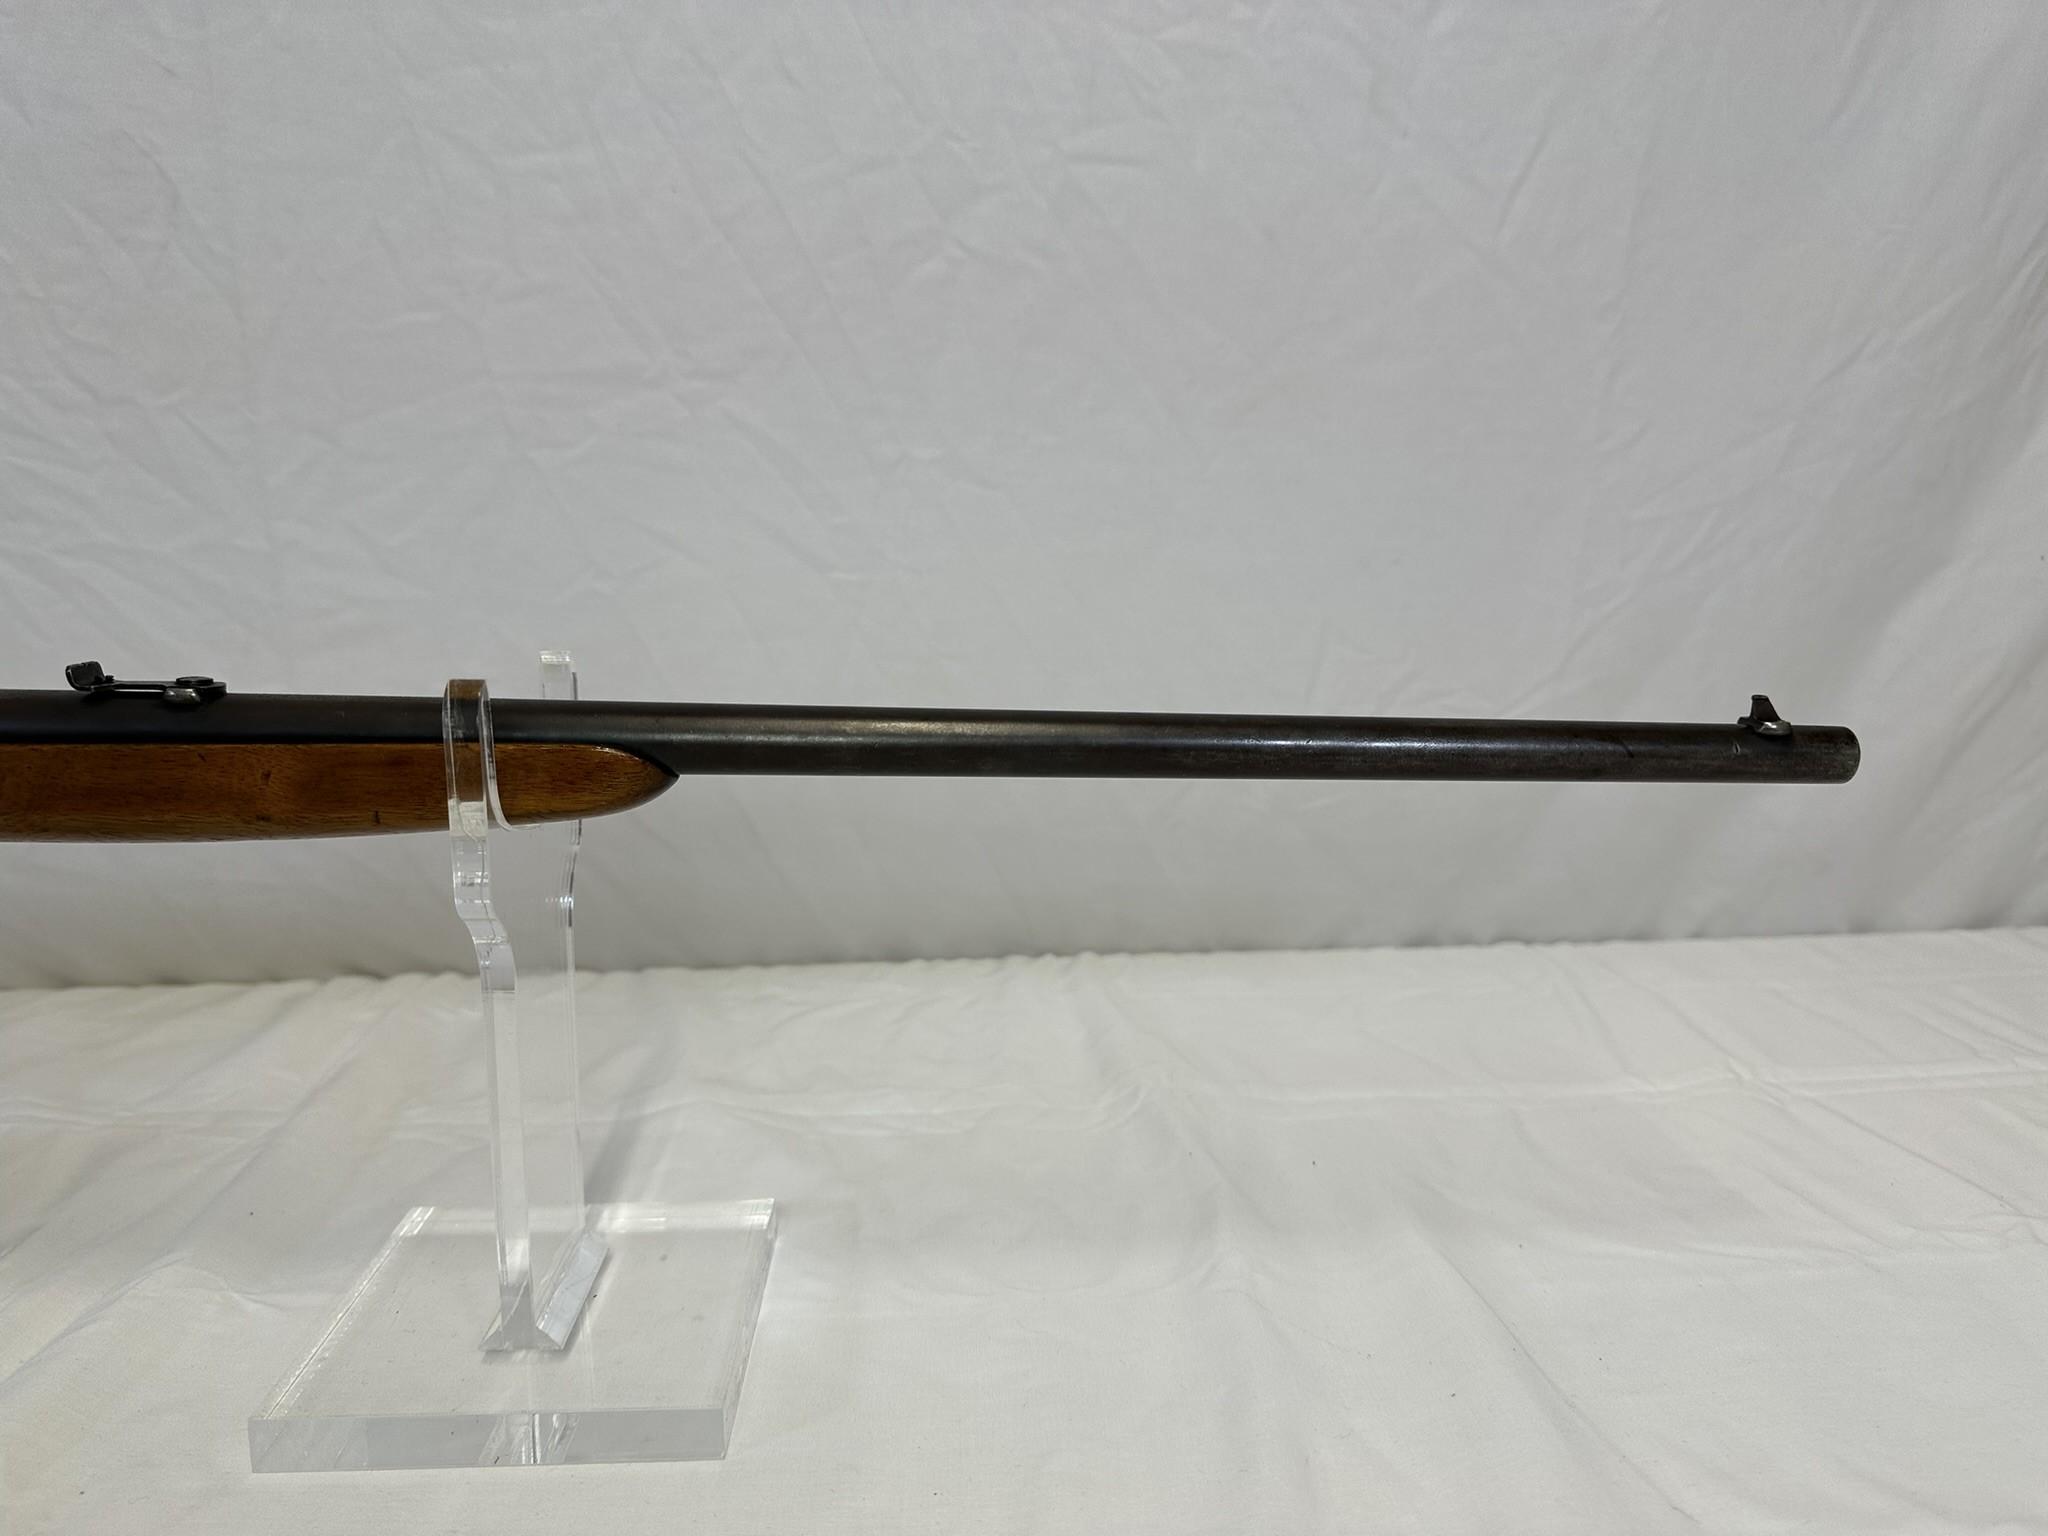 Remington mod 24 22S cal semi-auto rifle